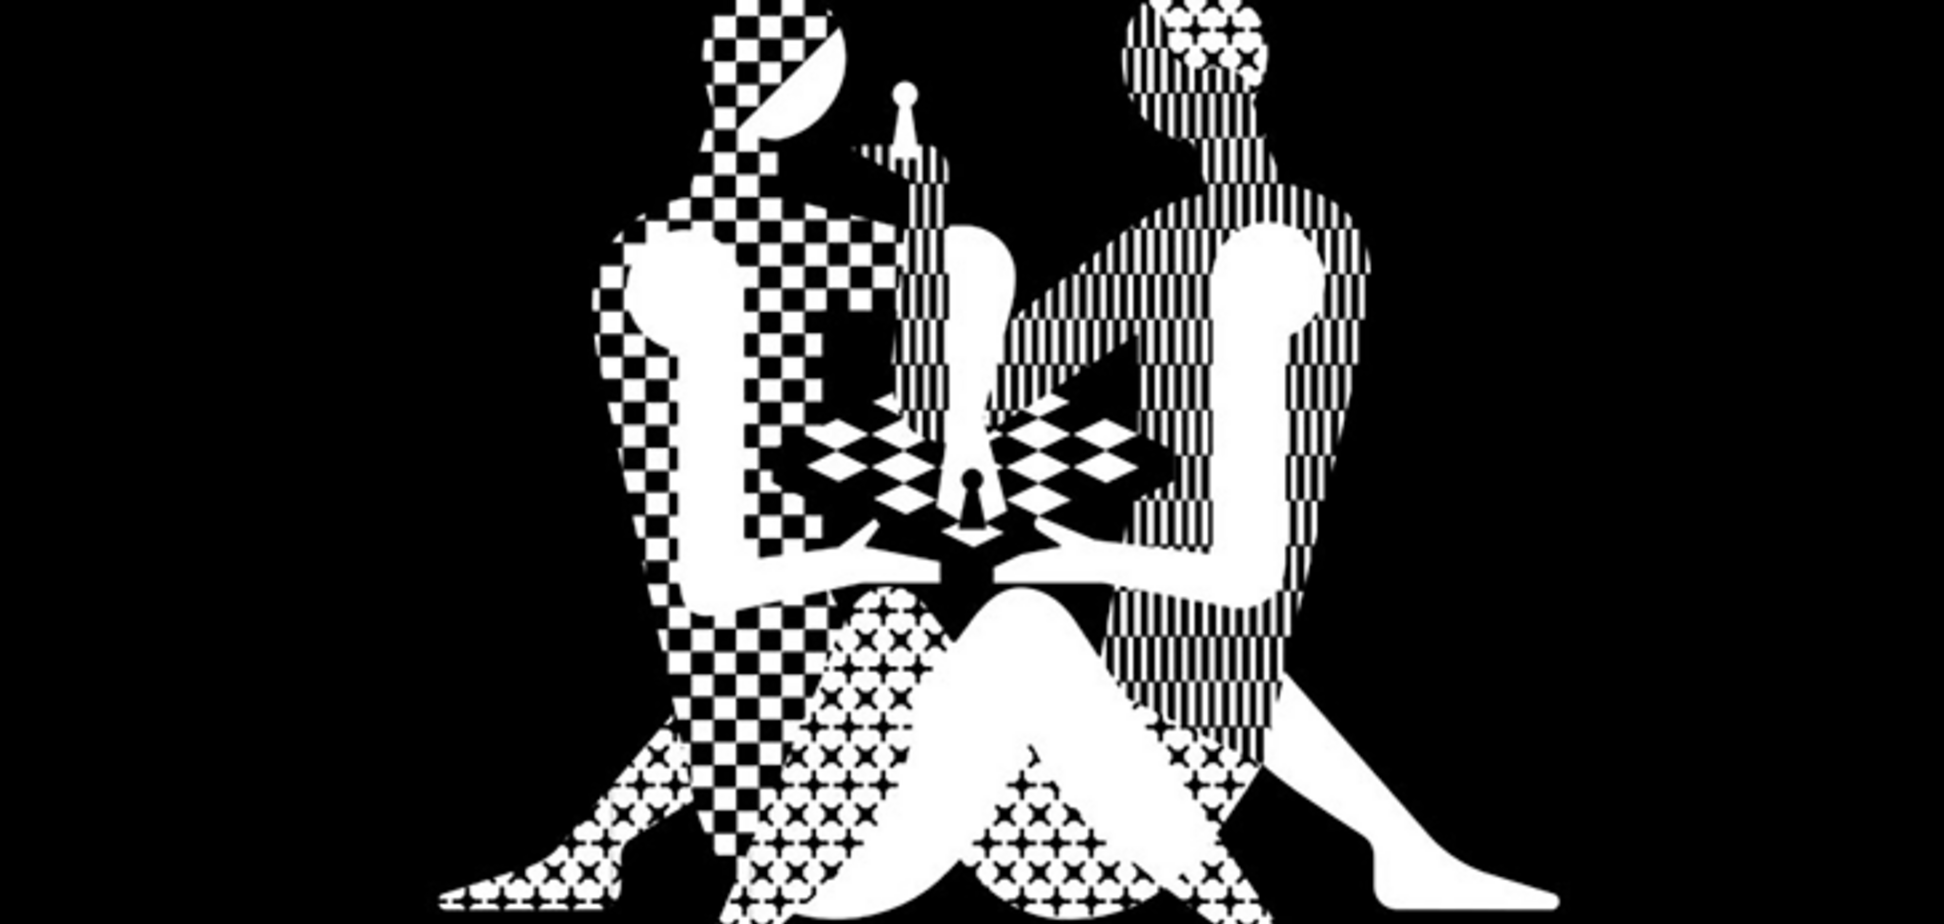 Поза из Камасутры: россияне представили несуразный логотип к чемпионату мира по шахматам - фотофакт